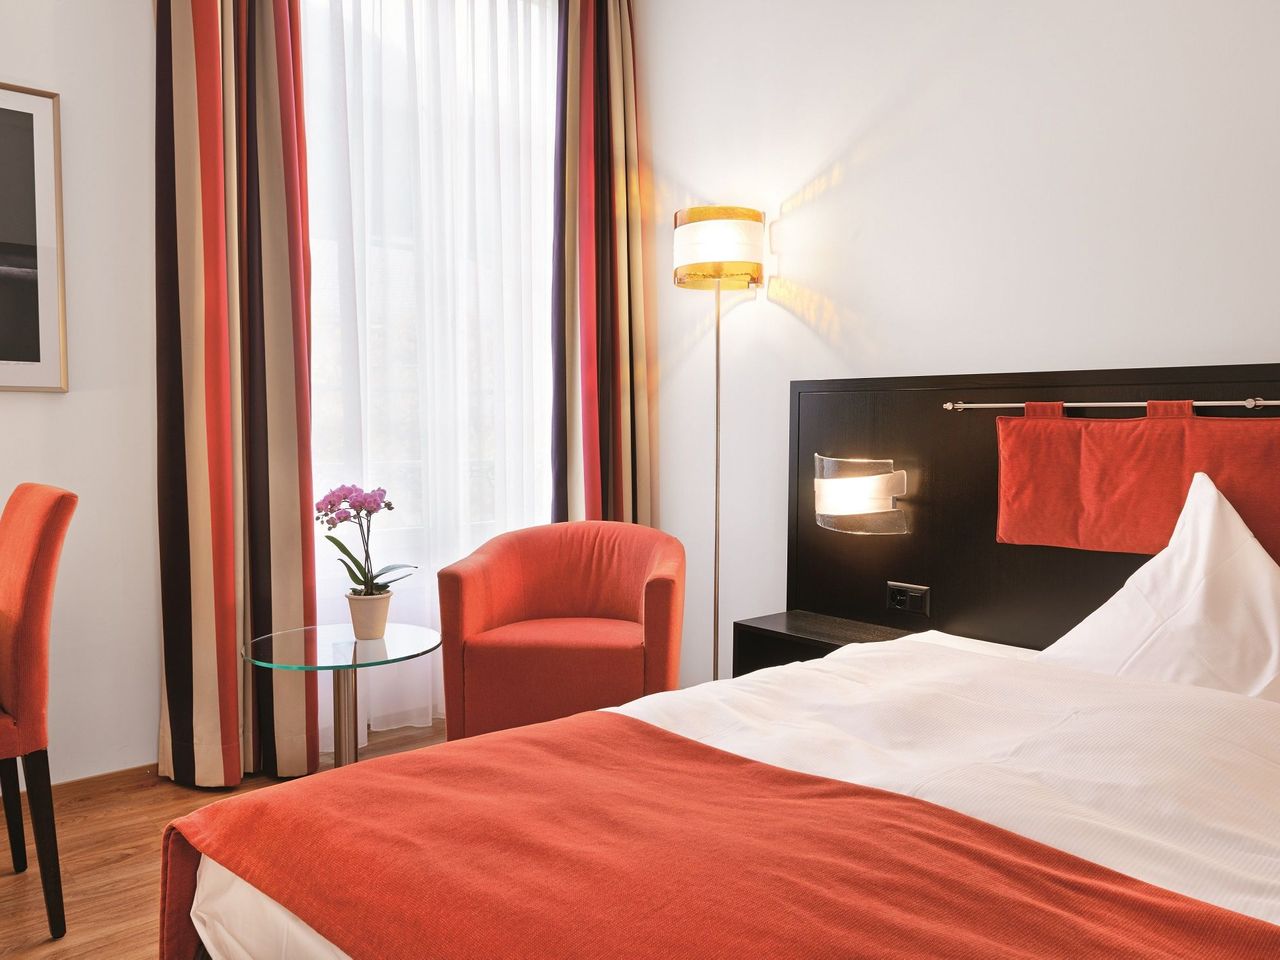 9 Tage Schweiz entdecken im Sorell Hotel Tamina